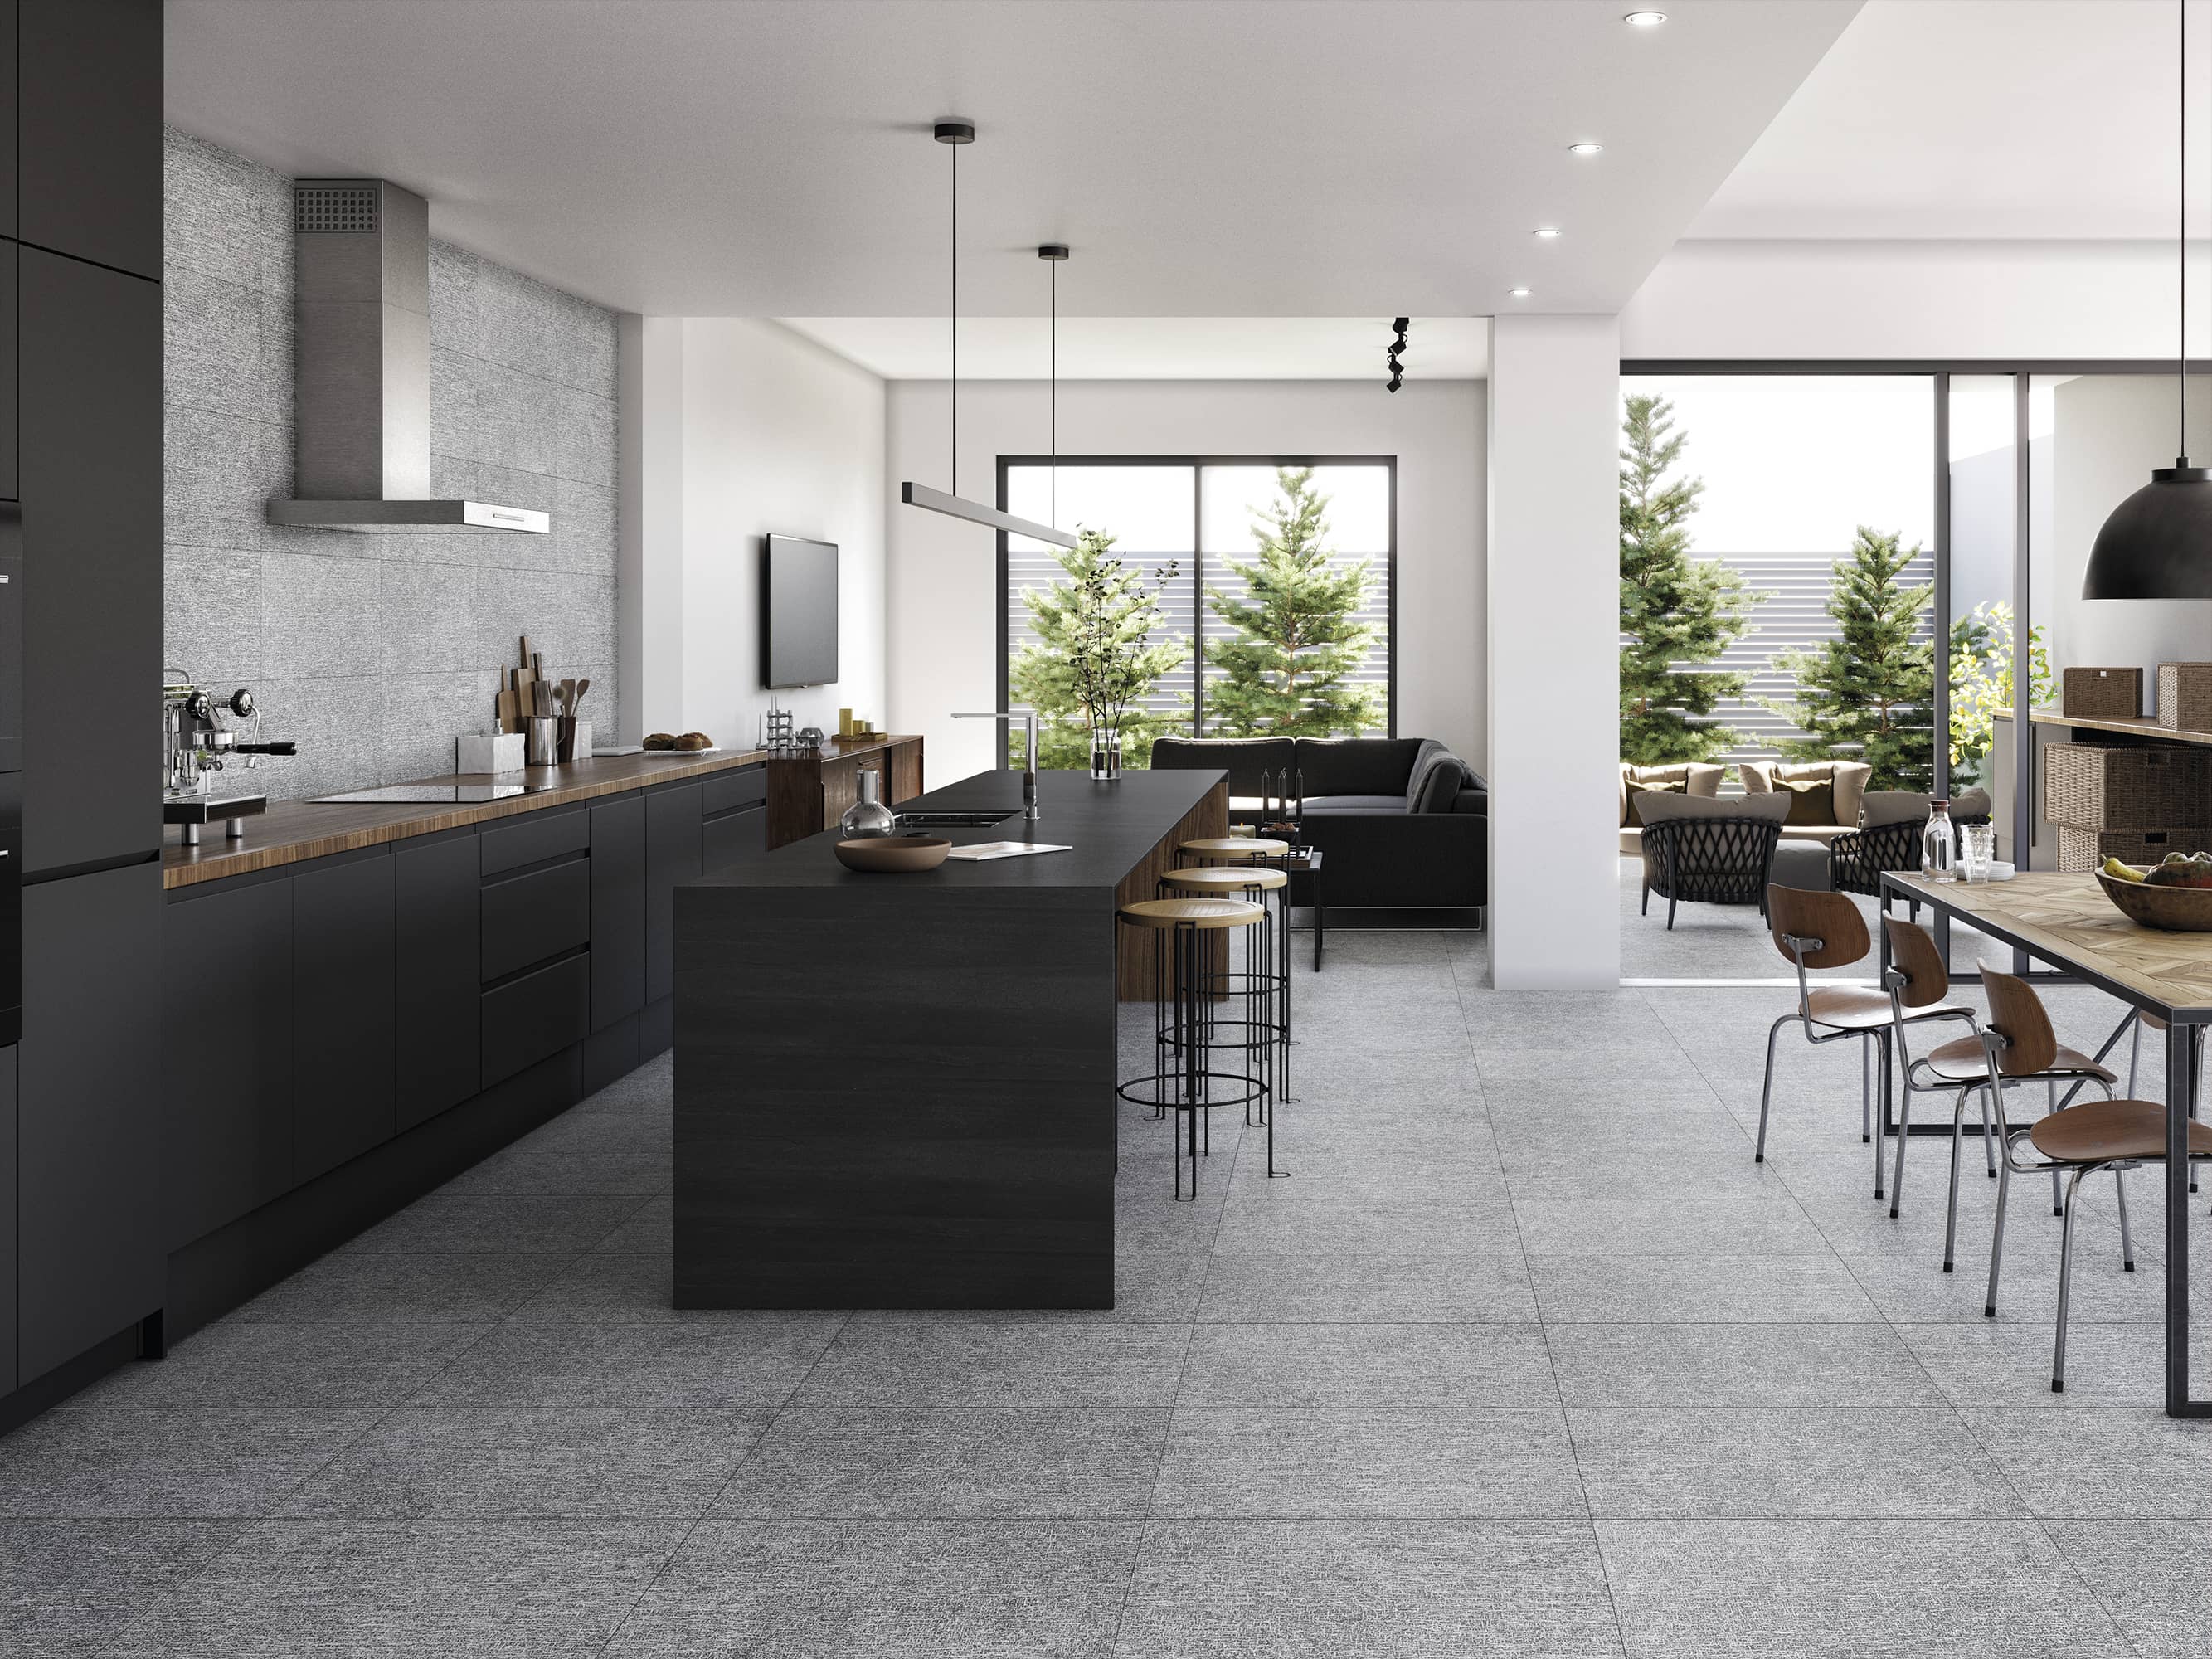 Les grands carreaux gris effet pierre naturelle créent le lien dans cette vaste pièce à vivre Tendance Design High-tech. Le coordonné en format rectangle habille le mur de crédence jusqu'au plafond.